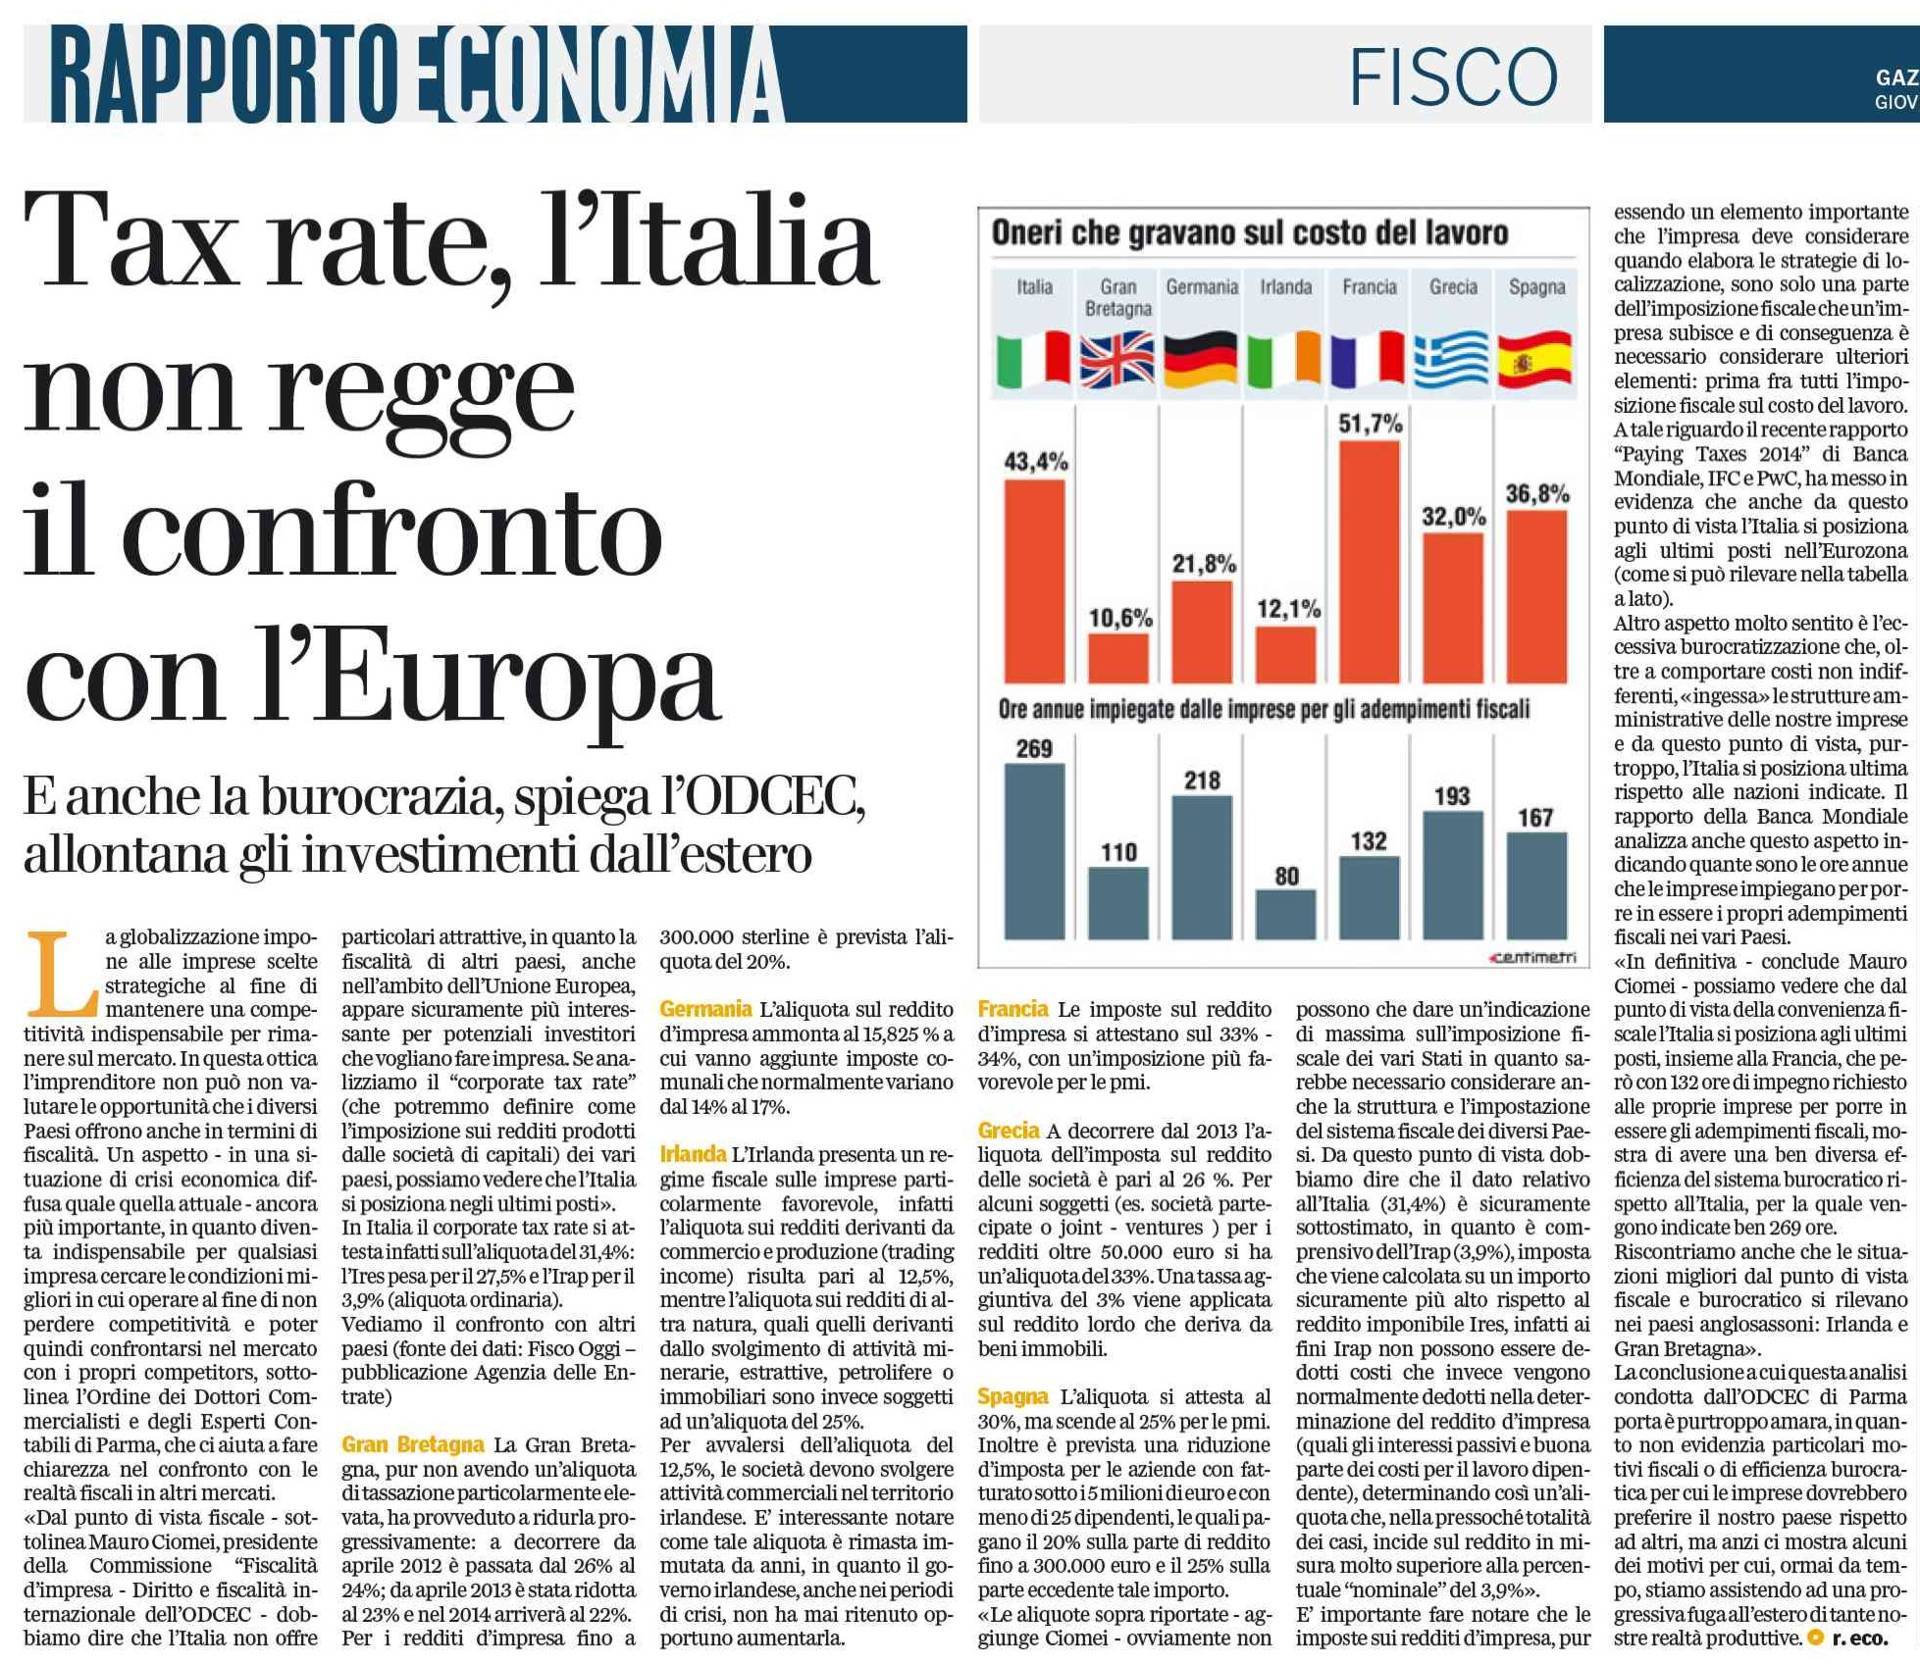 Articolo definitivo su Gazzetta di Parma 5-12-2013_02-ta (FILEminimizer)